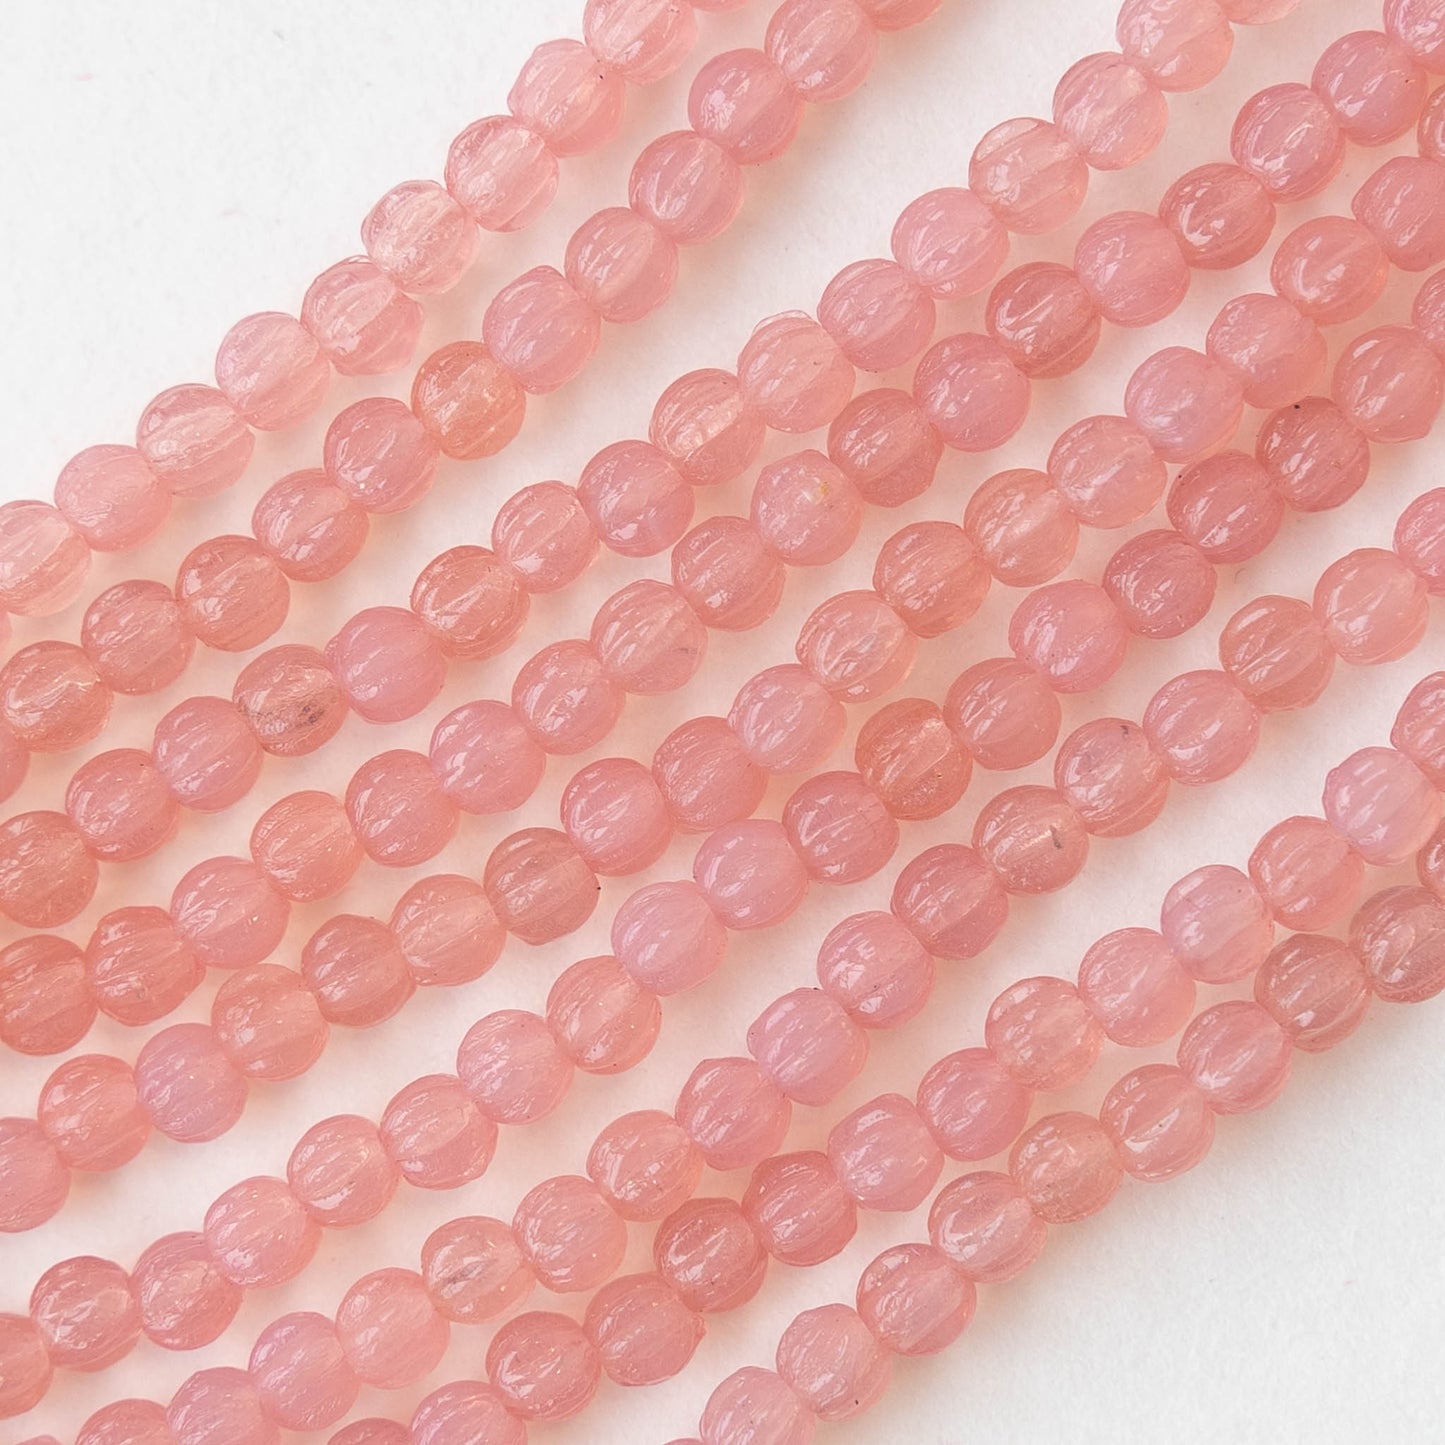 3mm Melon Beads - Pink Opaline - 100 Beads